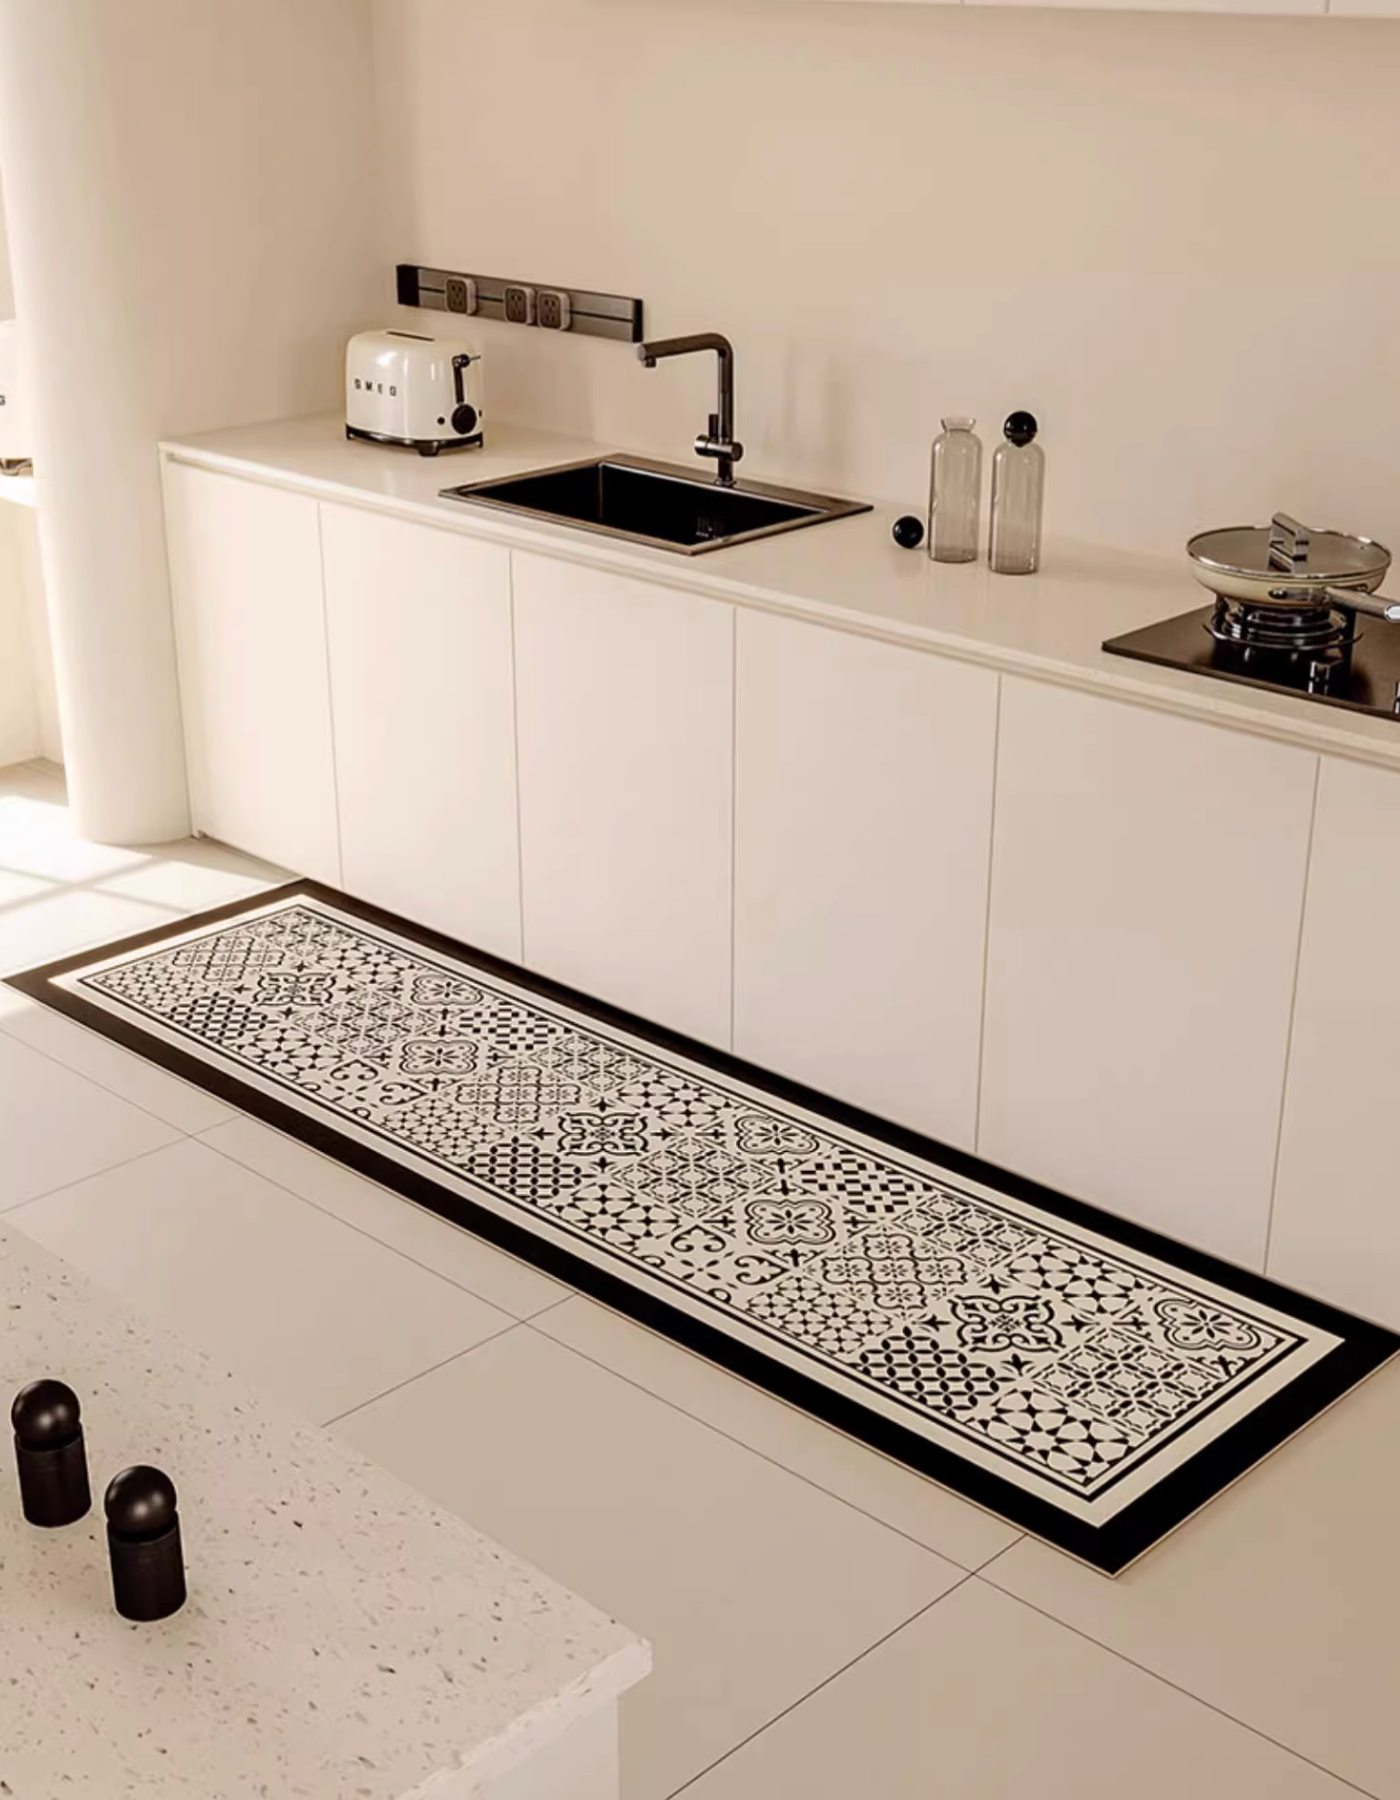 https://maisonmatta.ca/cdn/shop/files/portuguese-tiles-kitchen-mat-3.png?v=1692993959&width=1445